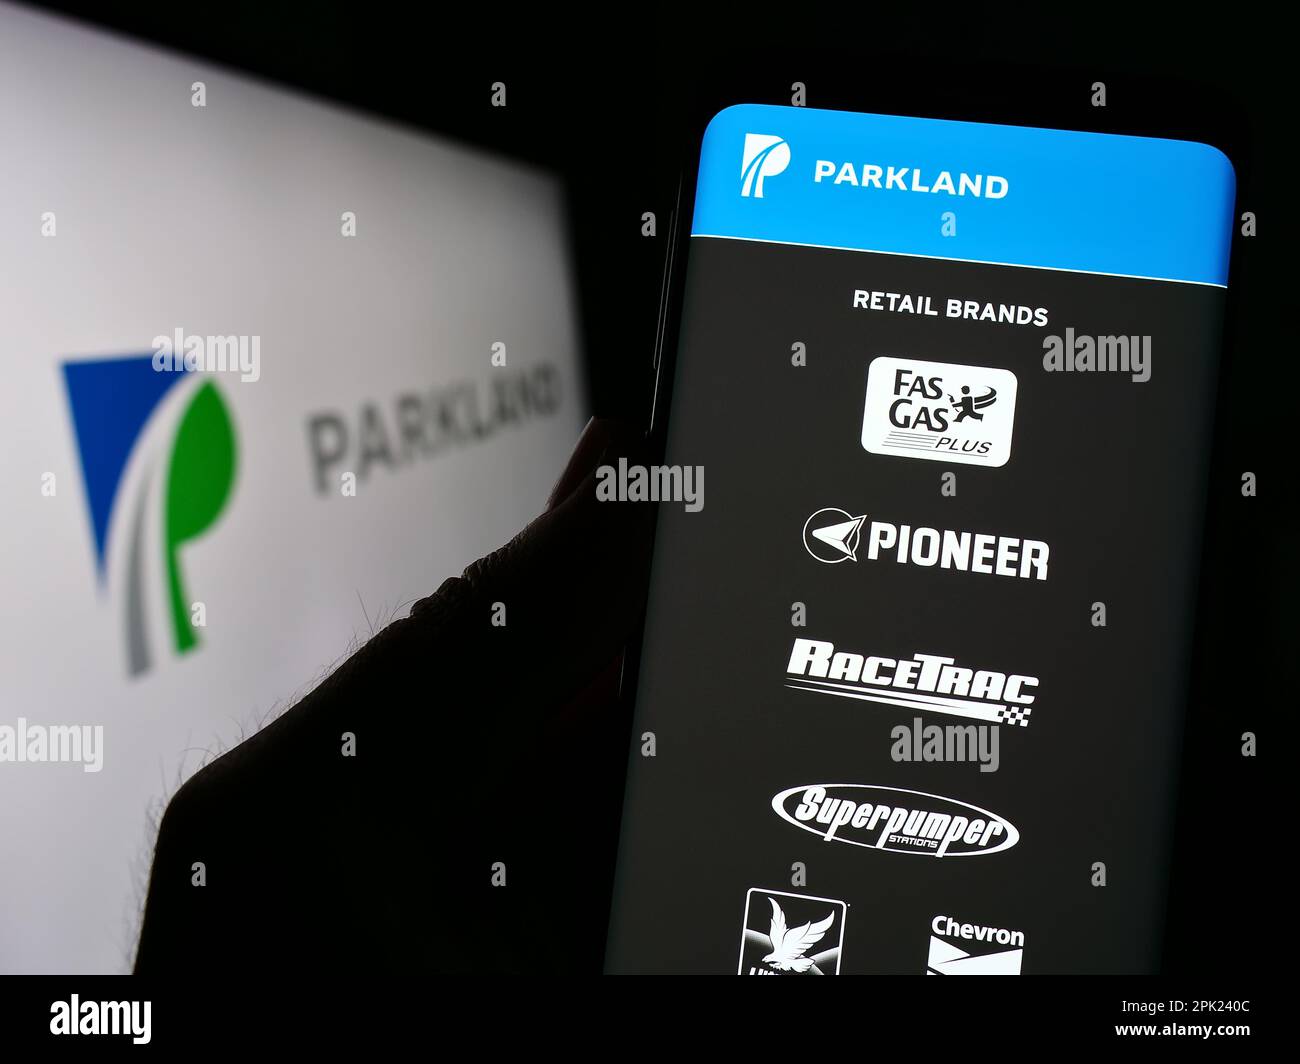 Personne tenant un téléphone cellulaire avec le site Web de la société de vente au détail d'énergie Parkland Corporation à l'écran devant le logo. Concentrez-vous sur le centre de l'écran du téléphone. Banque D'Images